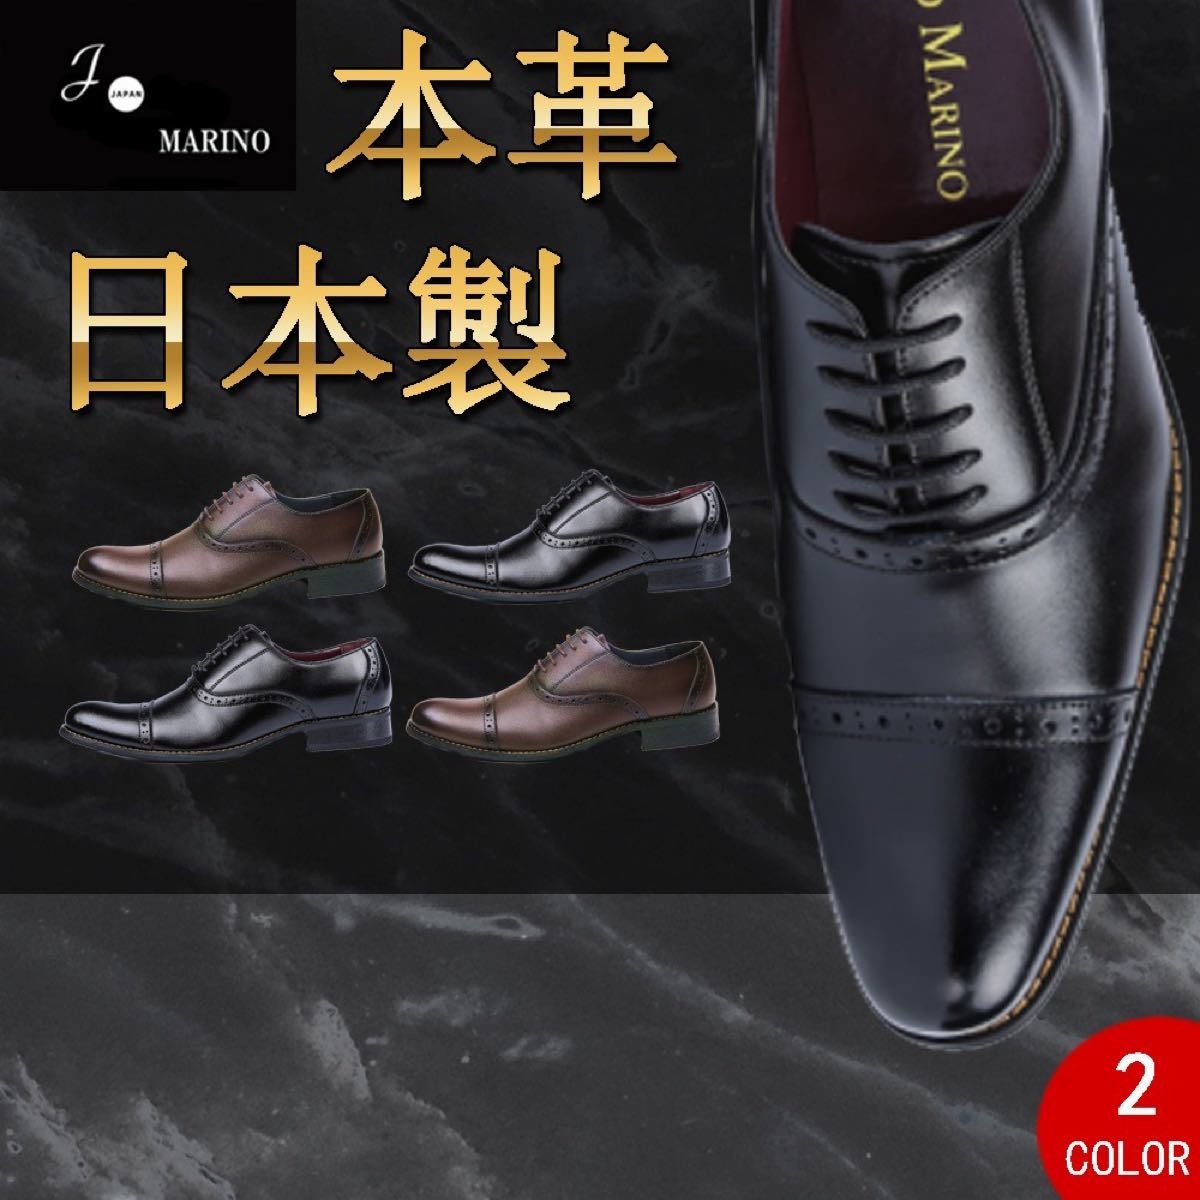 数量限定 新品未使用 日本製本革 ビジネスシューズ 紳士靴 182ーBLK